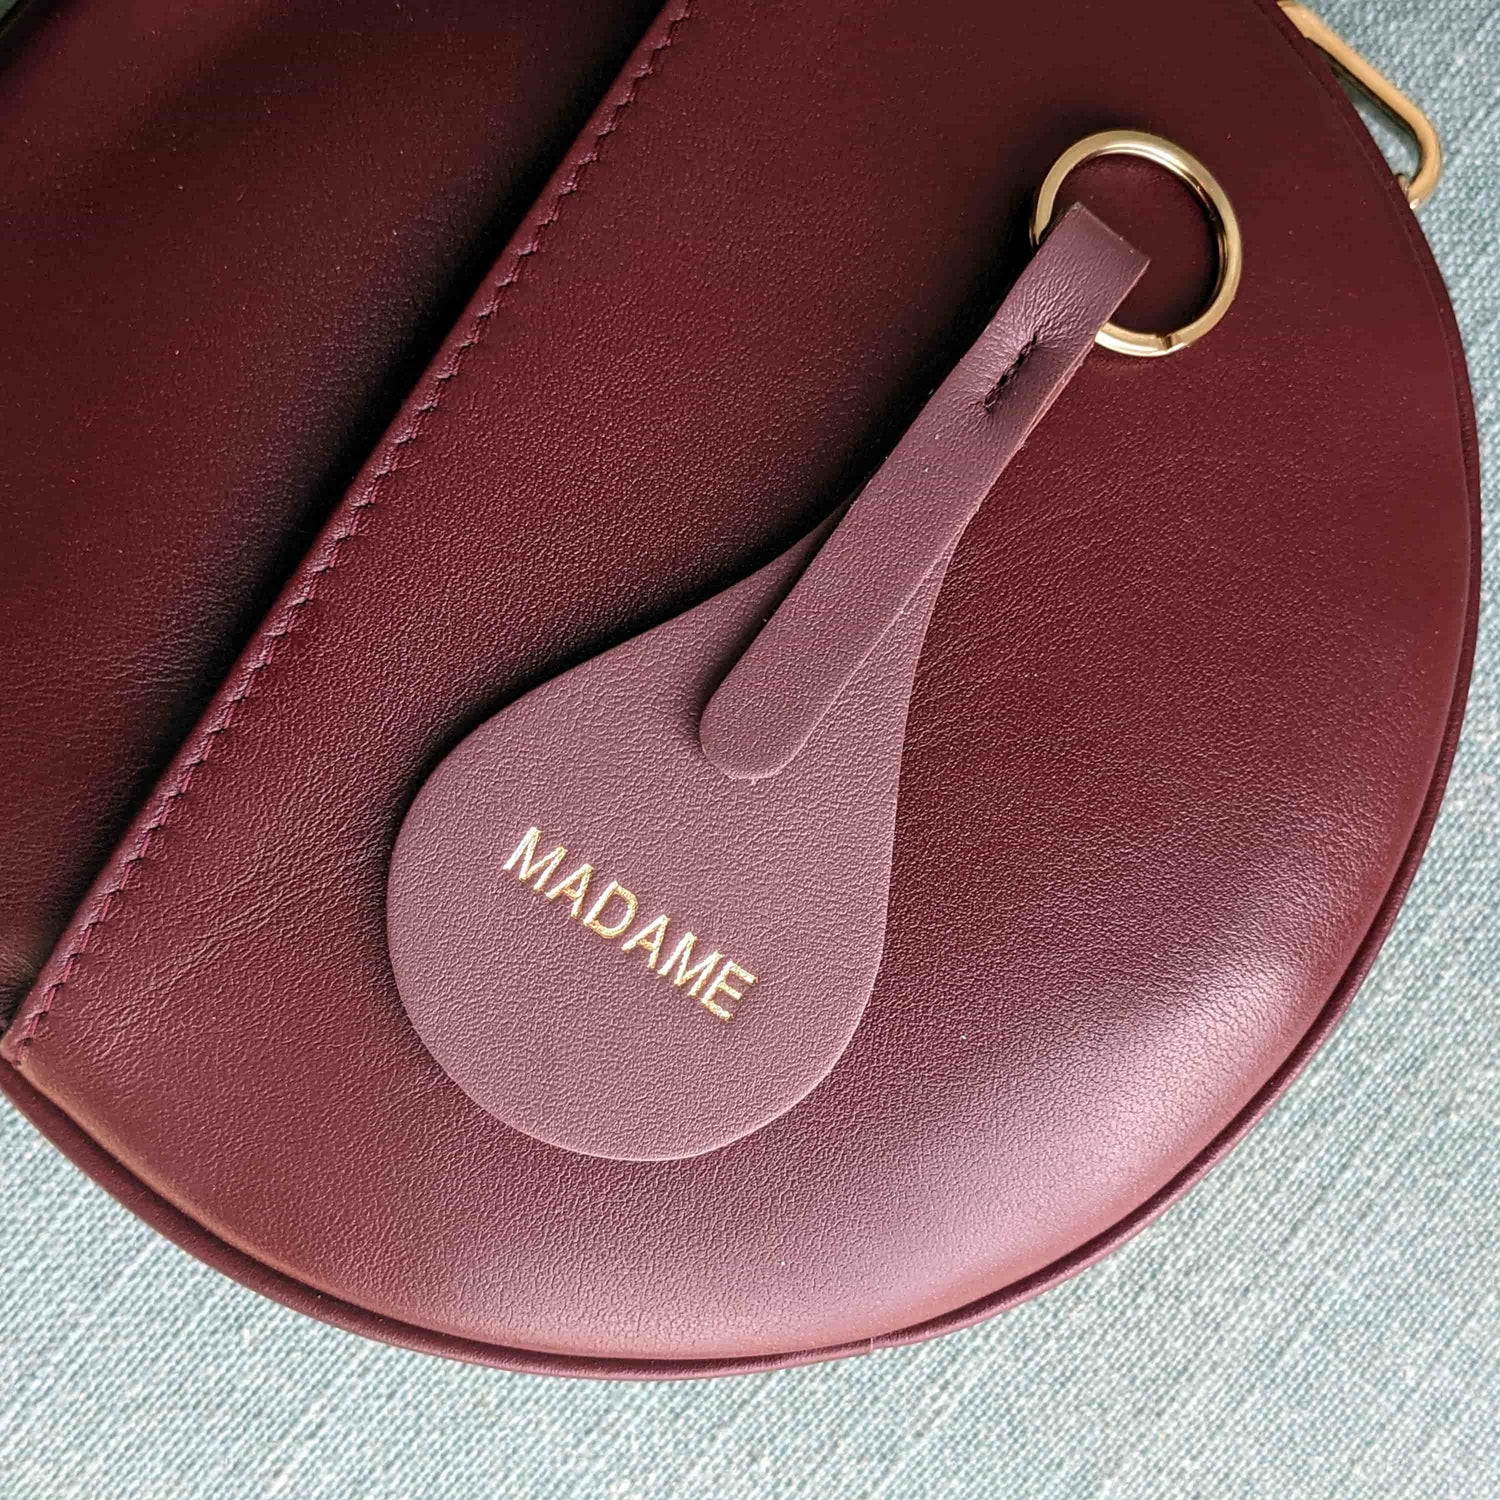 Leather keychain Madame - nostalgia rose - French Address